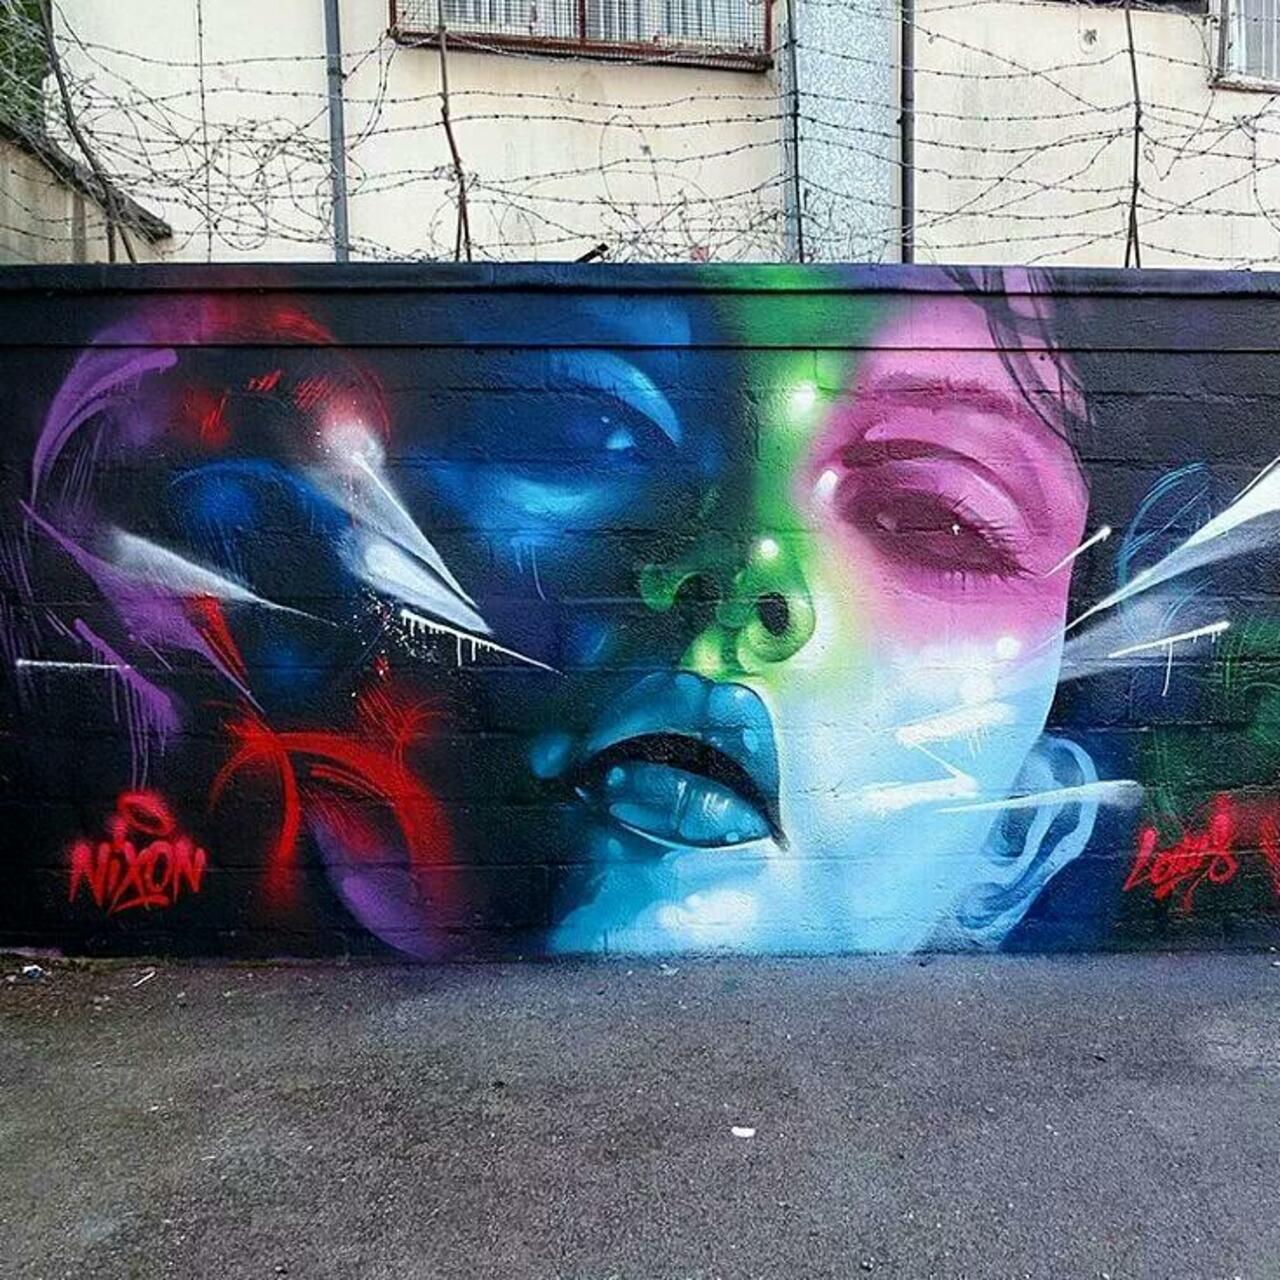 RT @QueGraffiti: Mural creado por Rmerism y Hoxeone en Cardiff, UK 
#streetart #mural #graffiti #art http://t.co/xUIhhAnKnu